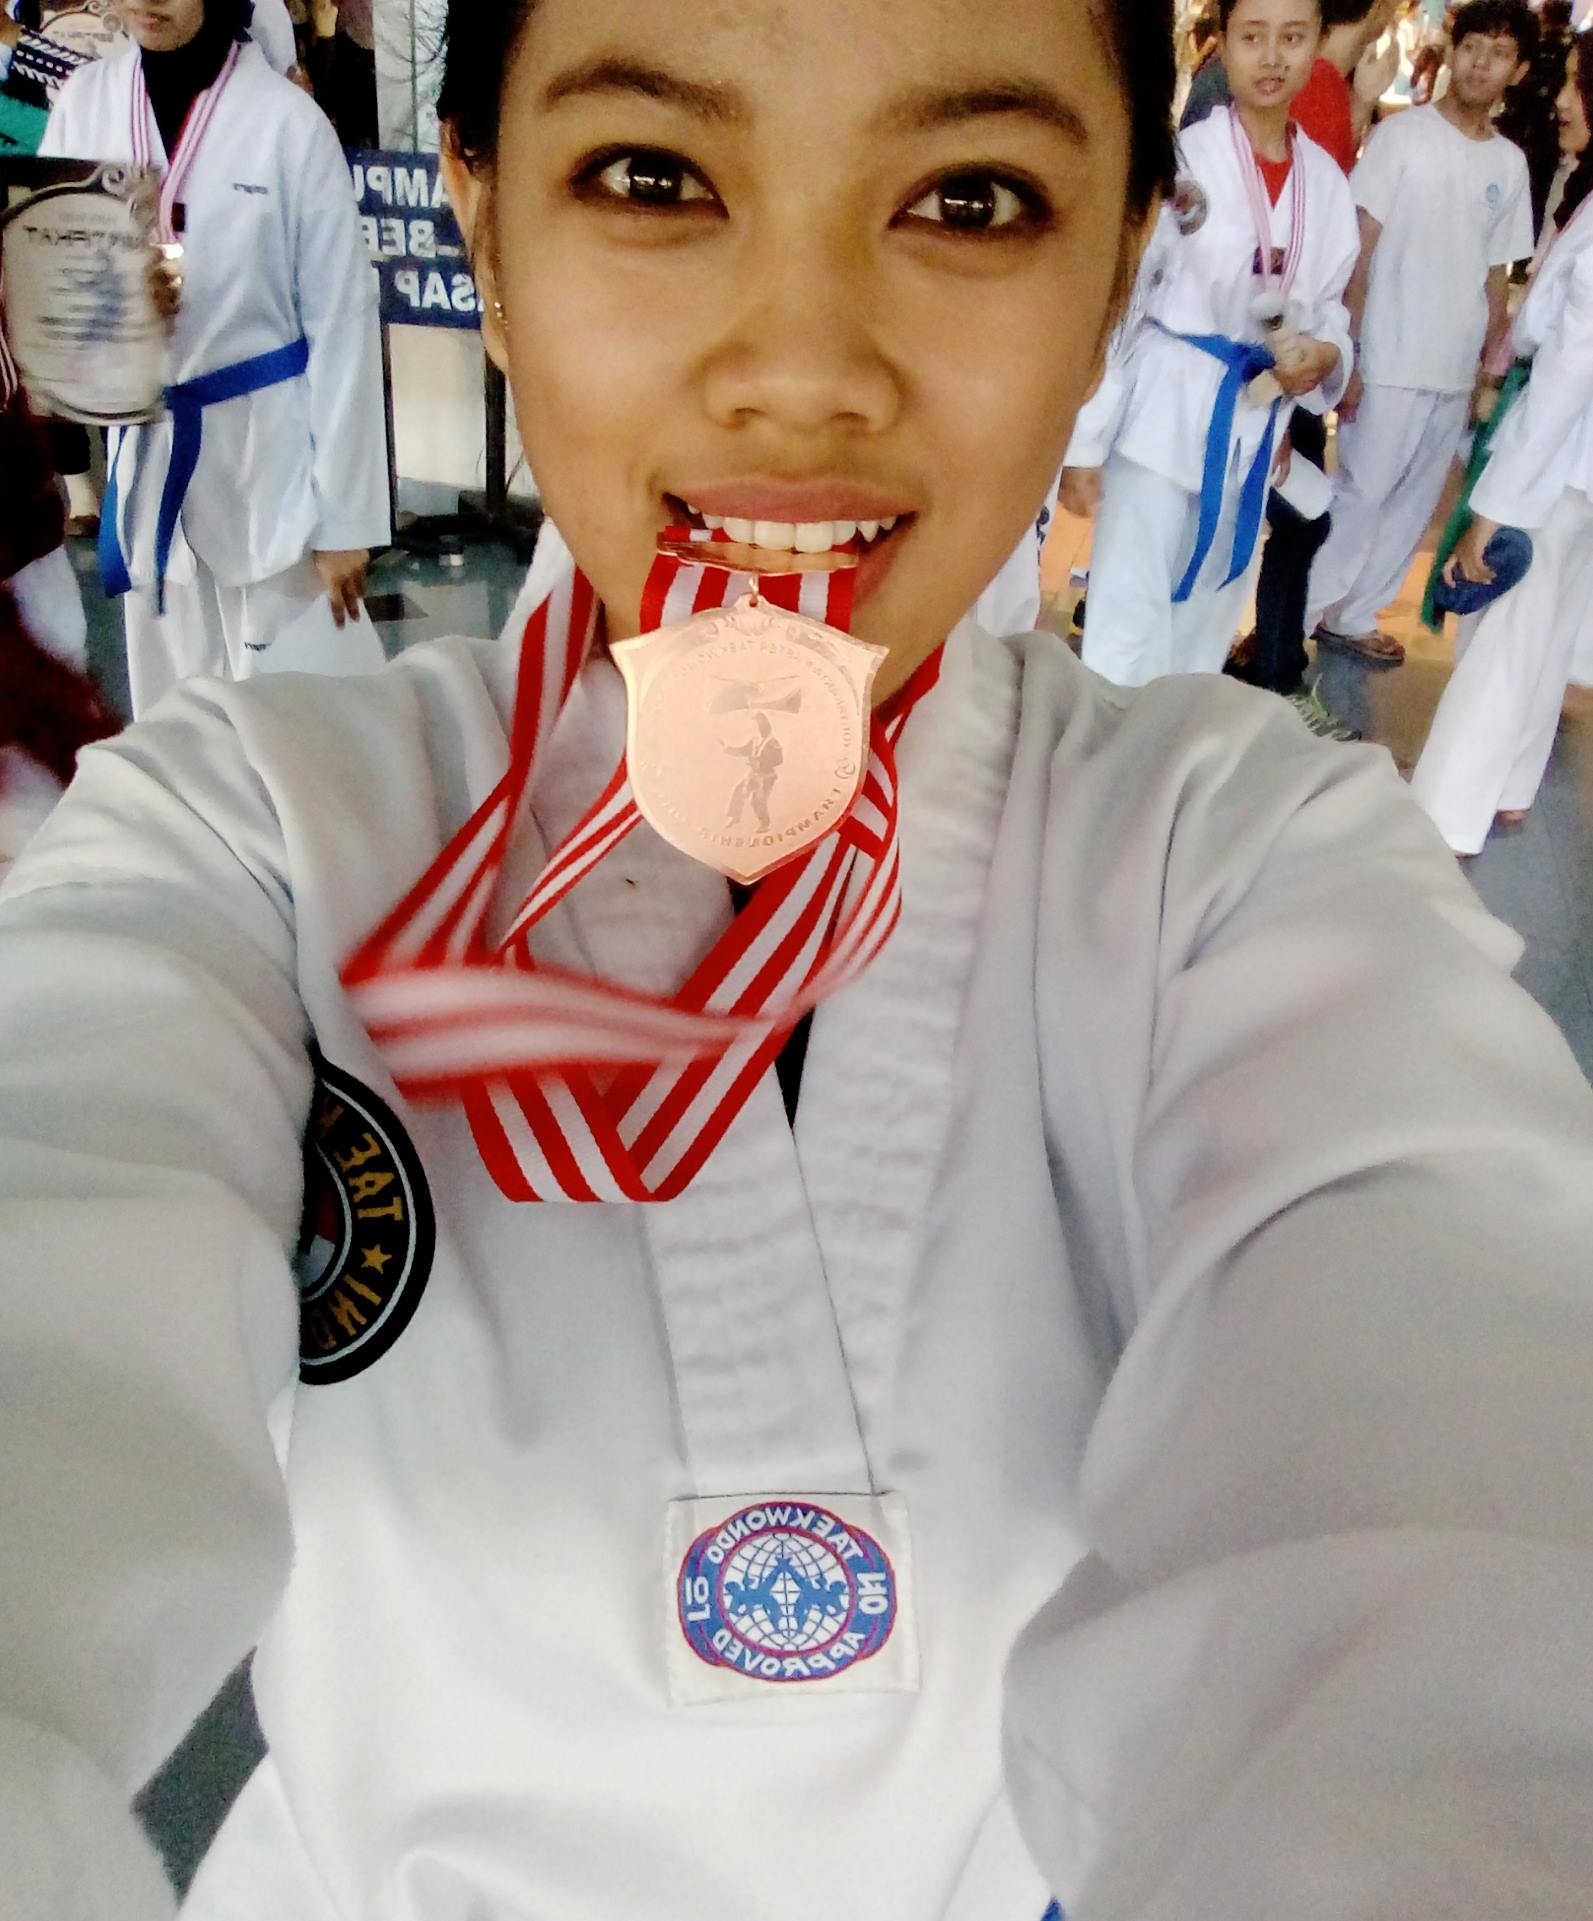 Foto Kejurda Poomsae Yogyakarta Master Taekwondo Poomsae Championship 2016